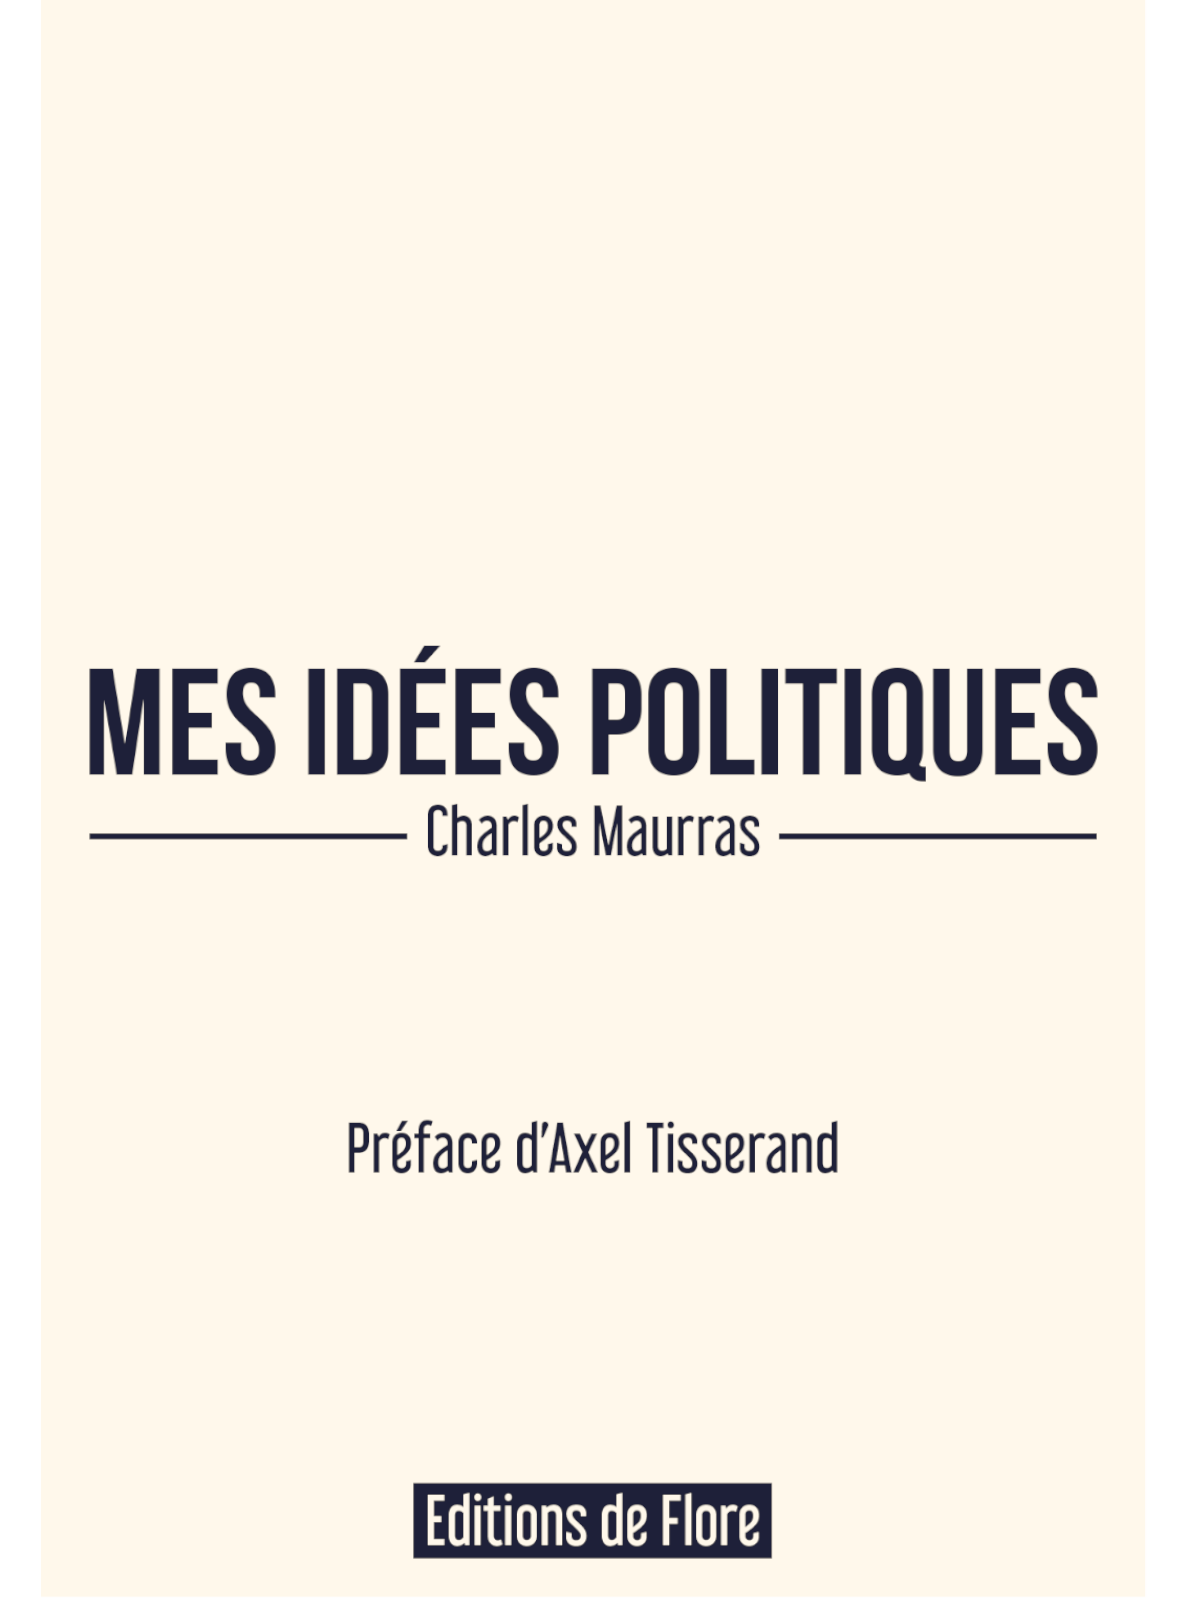 Charles Maurras: Mes idées politiques, préface d'Axel Tisserand